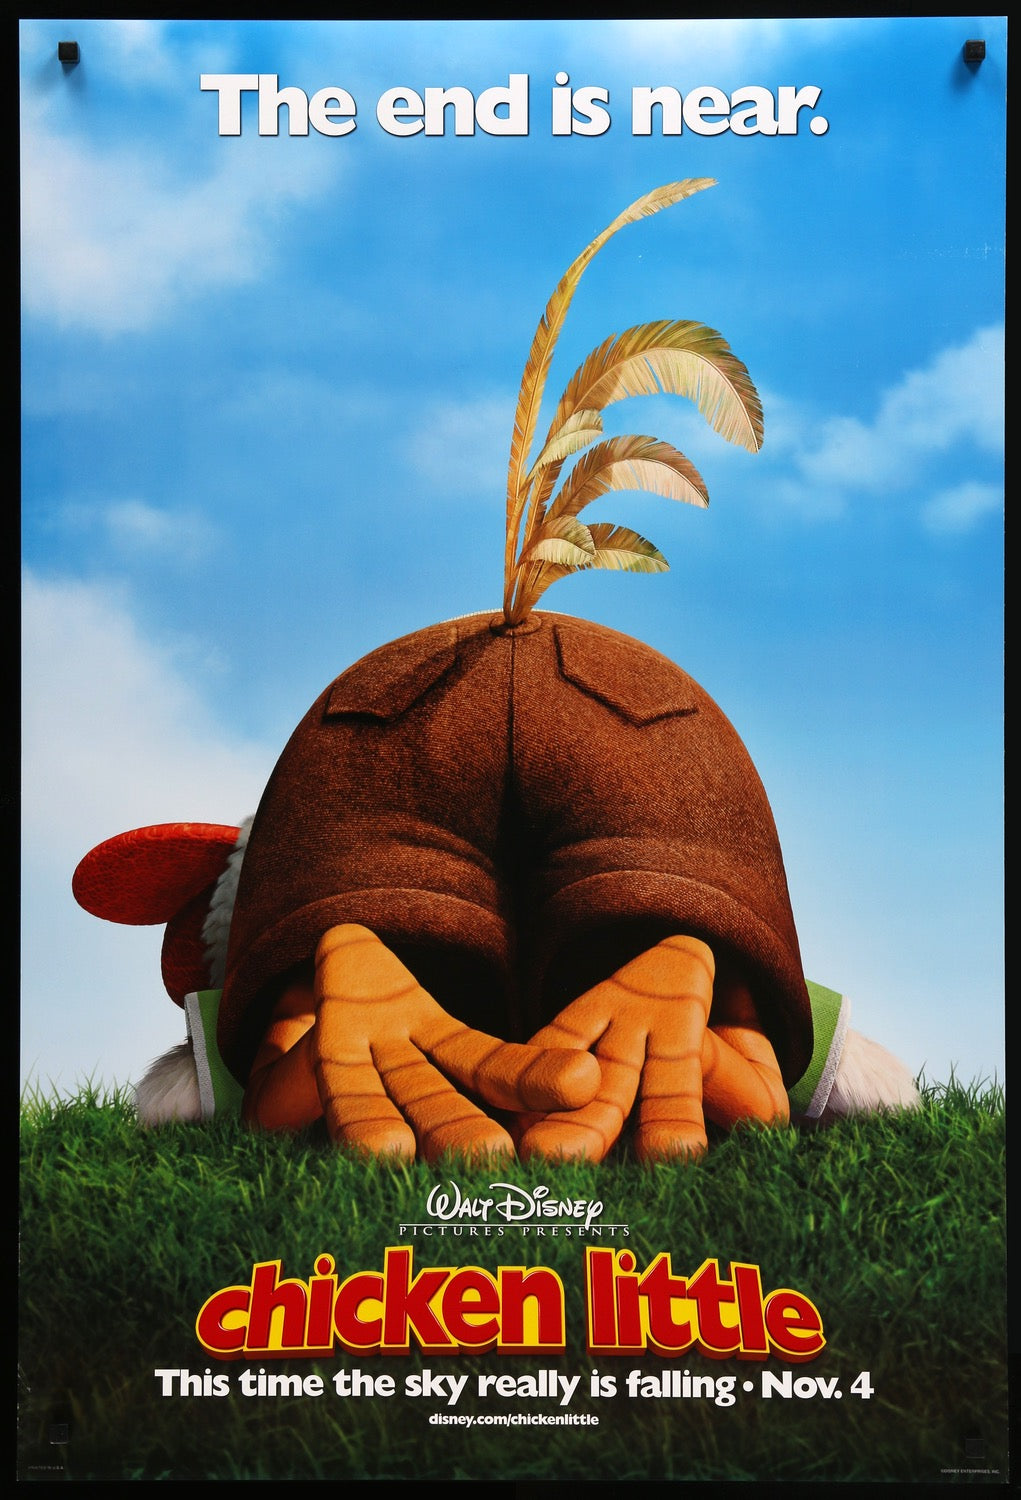 Chicken Little (2005) original movie poster for sale at Original Film Art